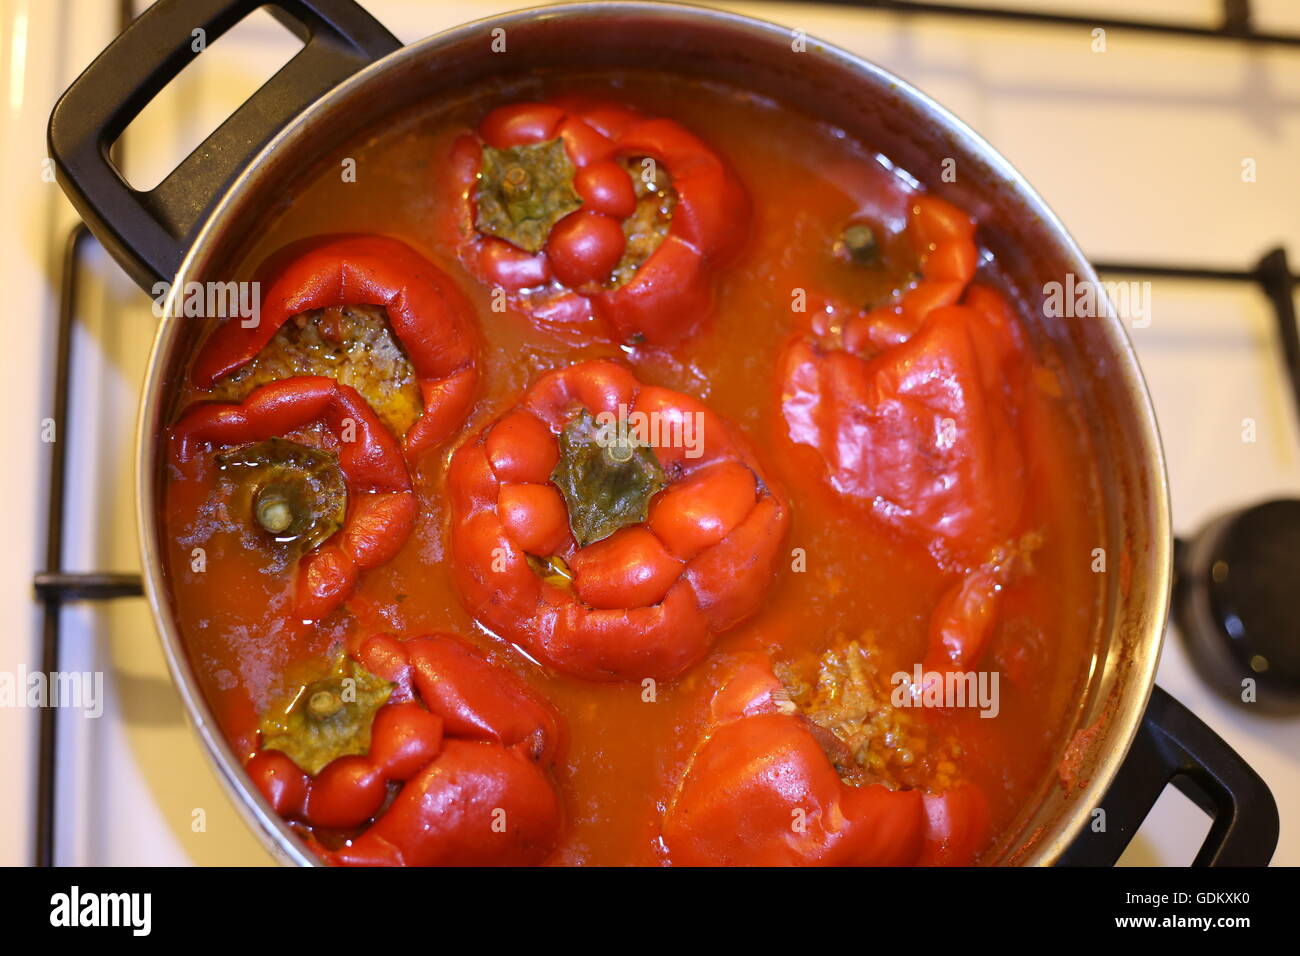 Gefüllte Paprika. Hausgemachte gefüllte Paprika in einem Topf  Stockfotografie - Alamy